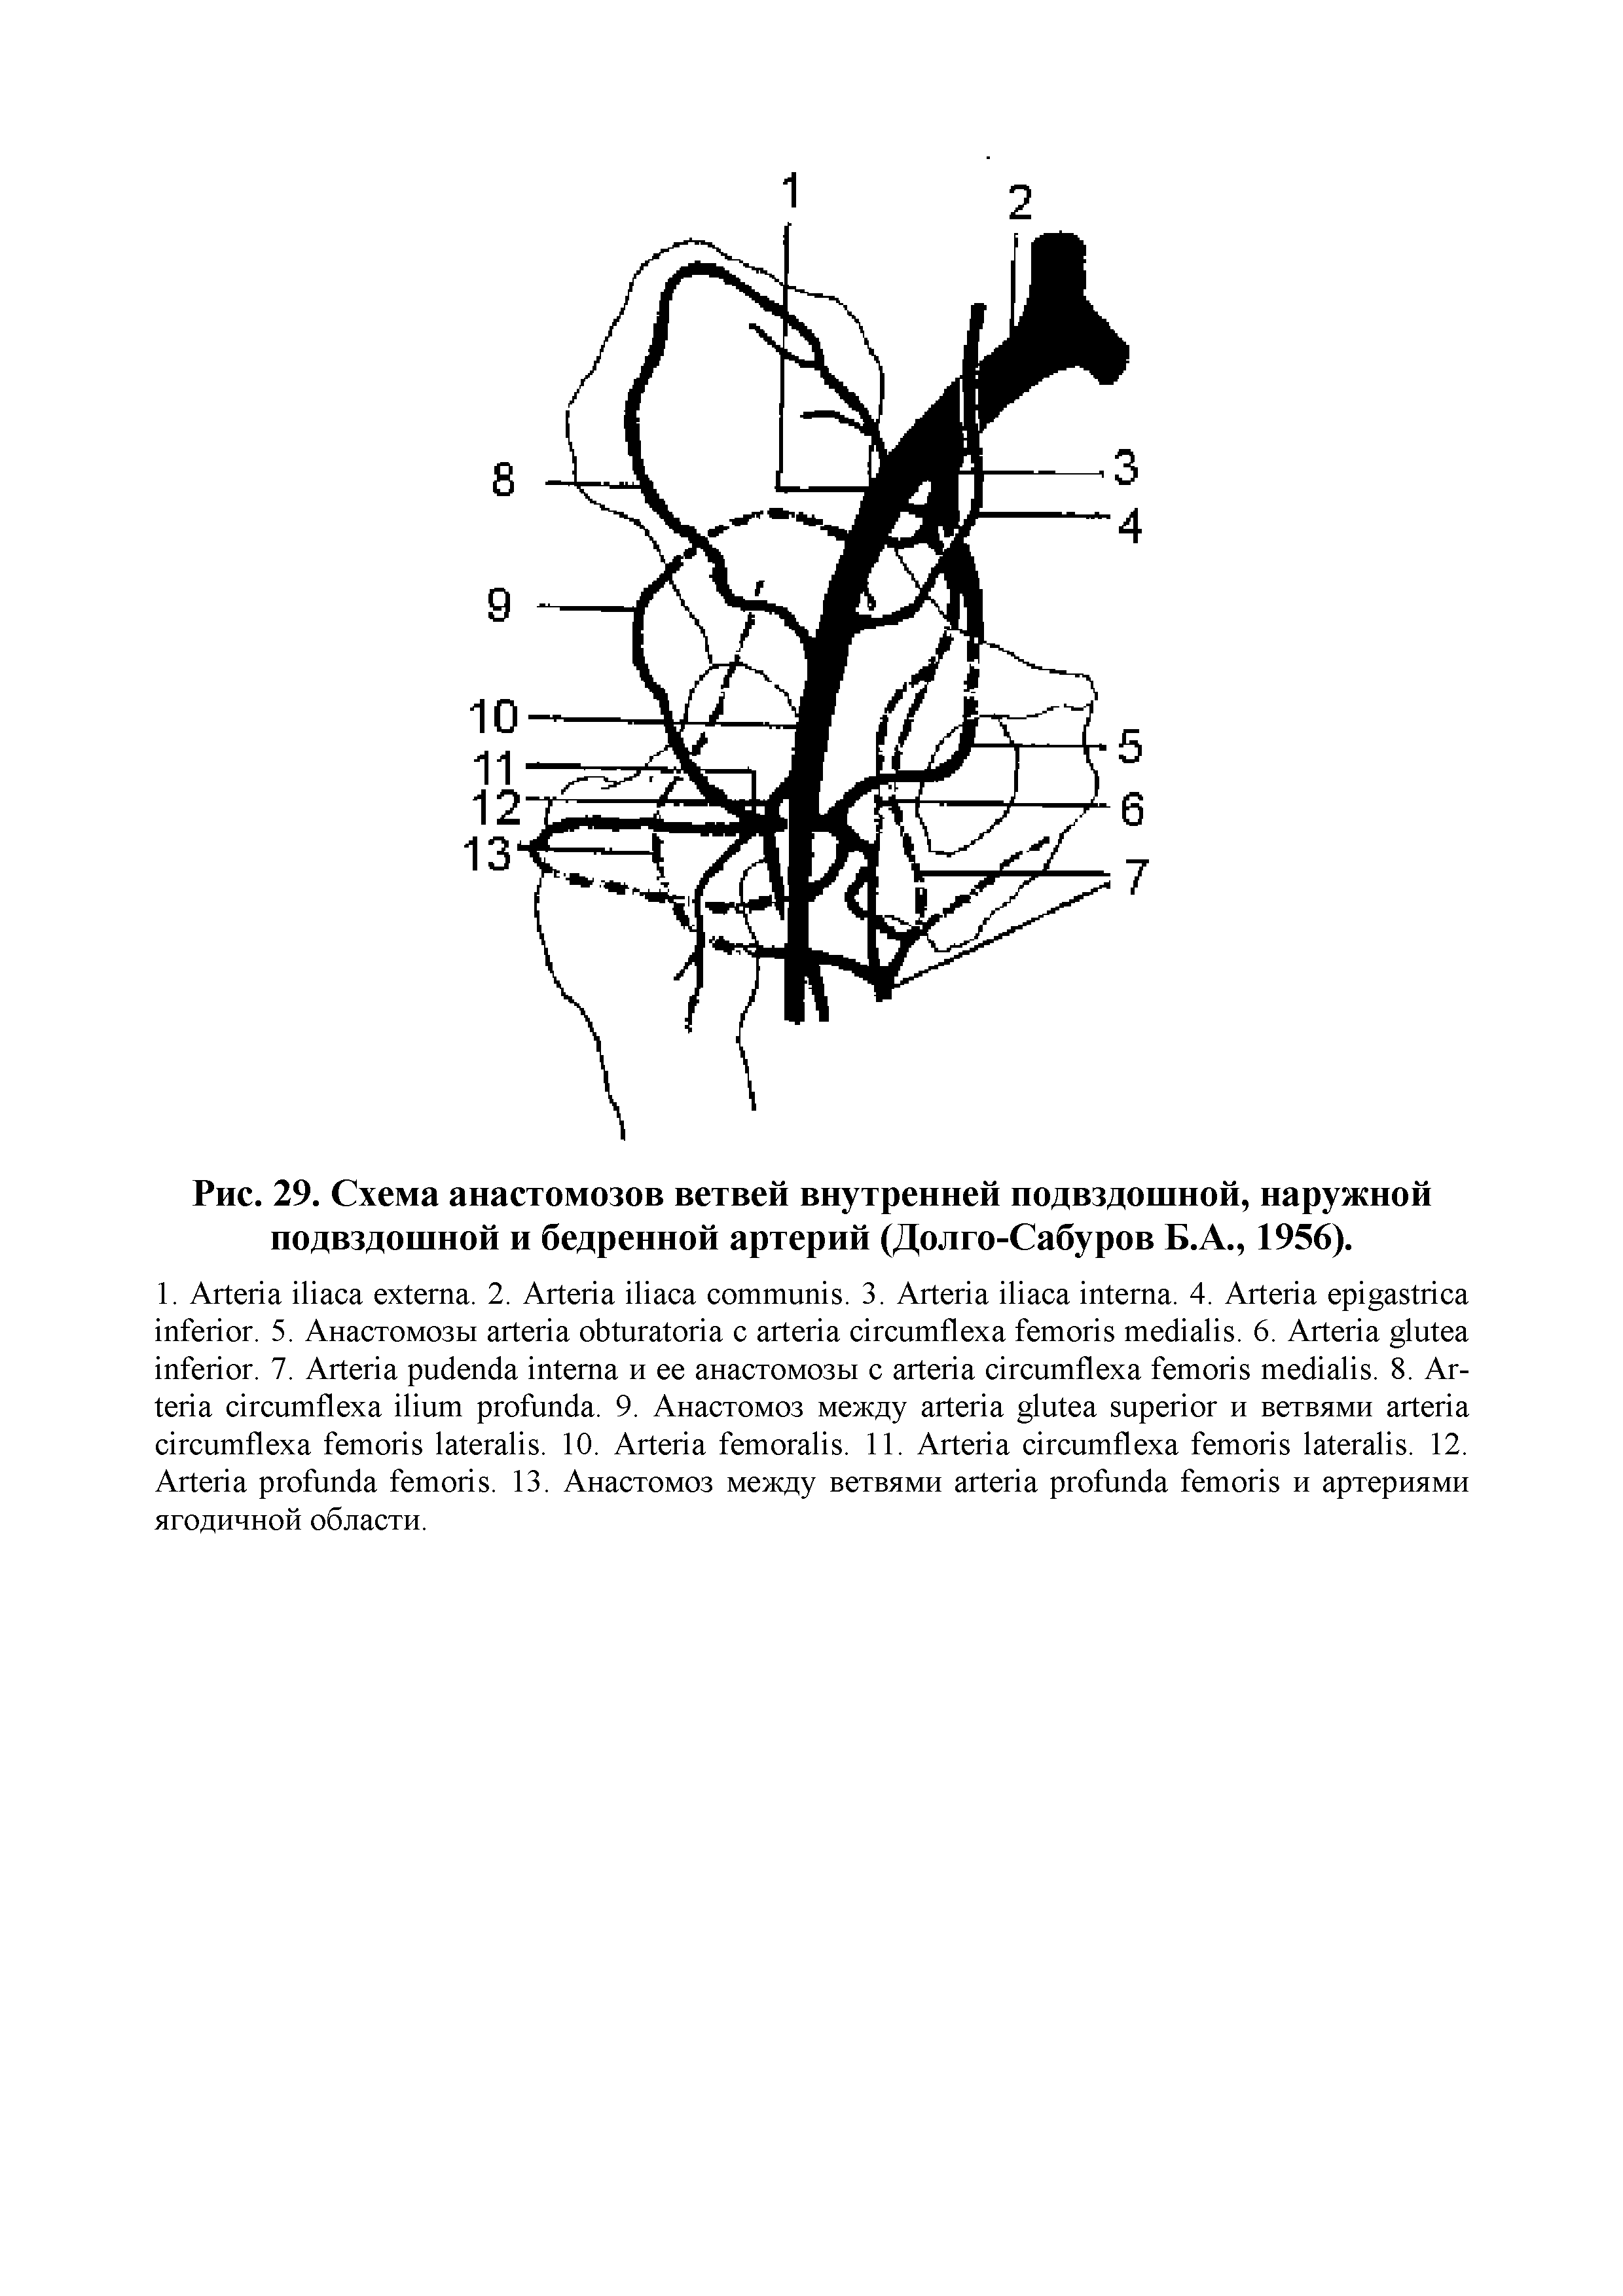 Рис. 29. Схема анастомозов ветвей внутренней подвздошной, наружной подвздошной и бедренной артерий (Долго-Сабуров Б.А., 1956).